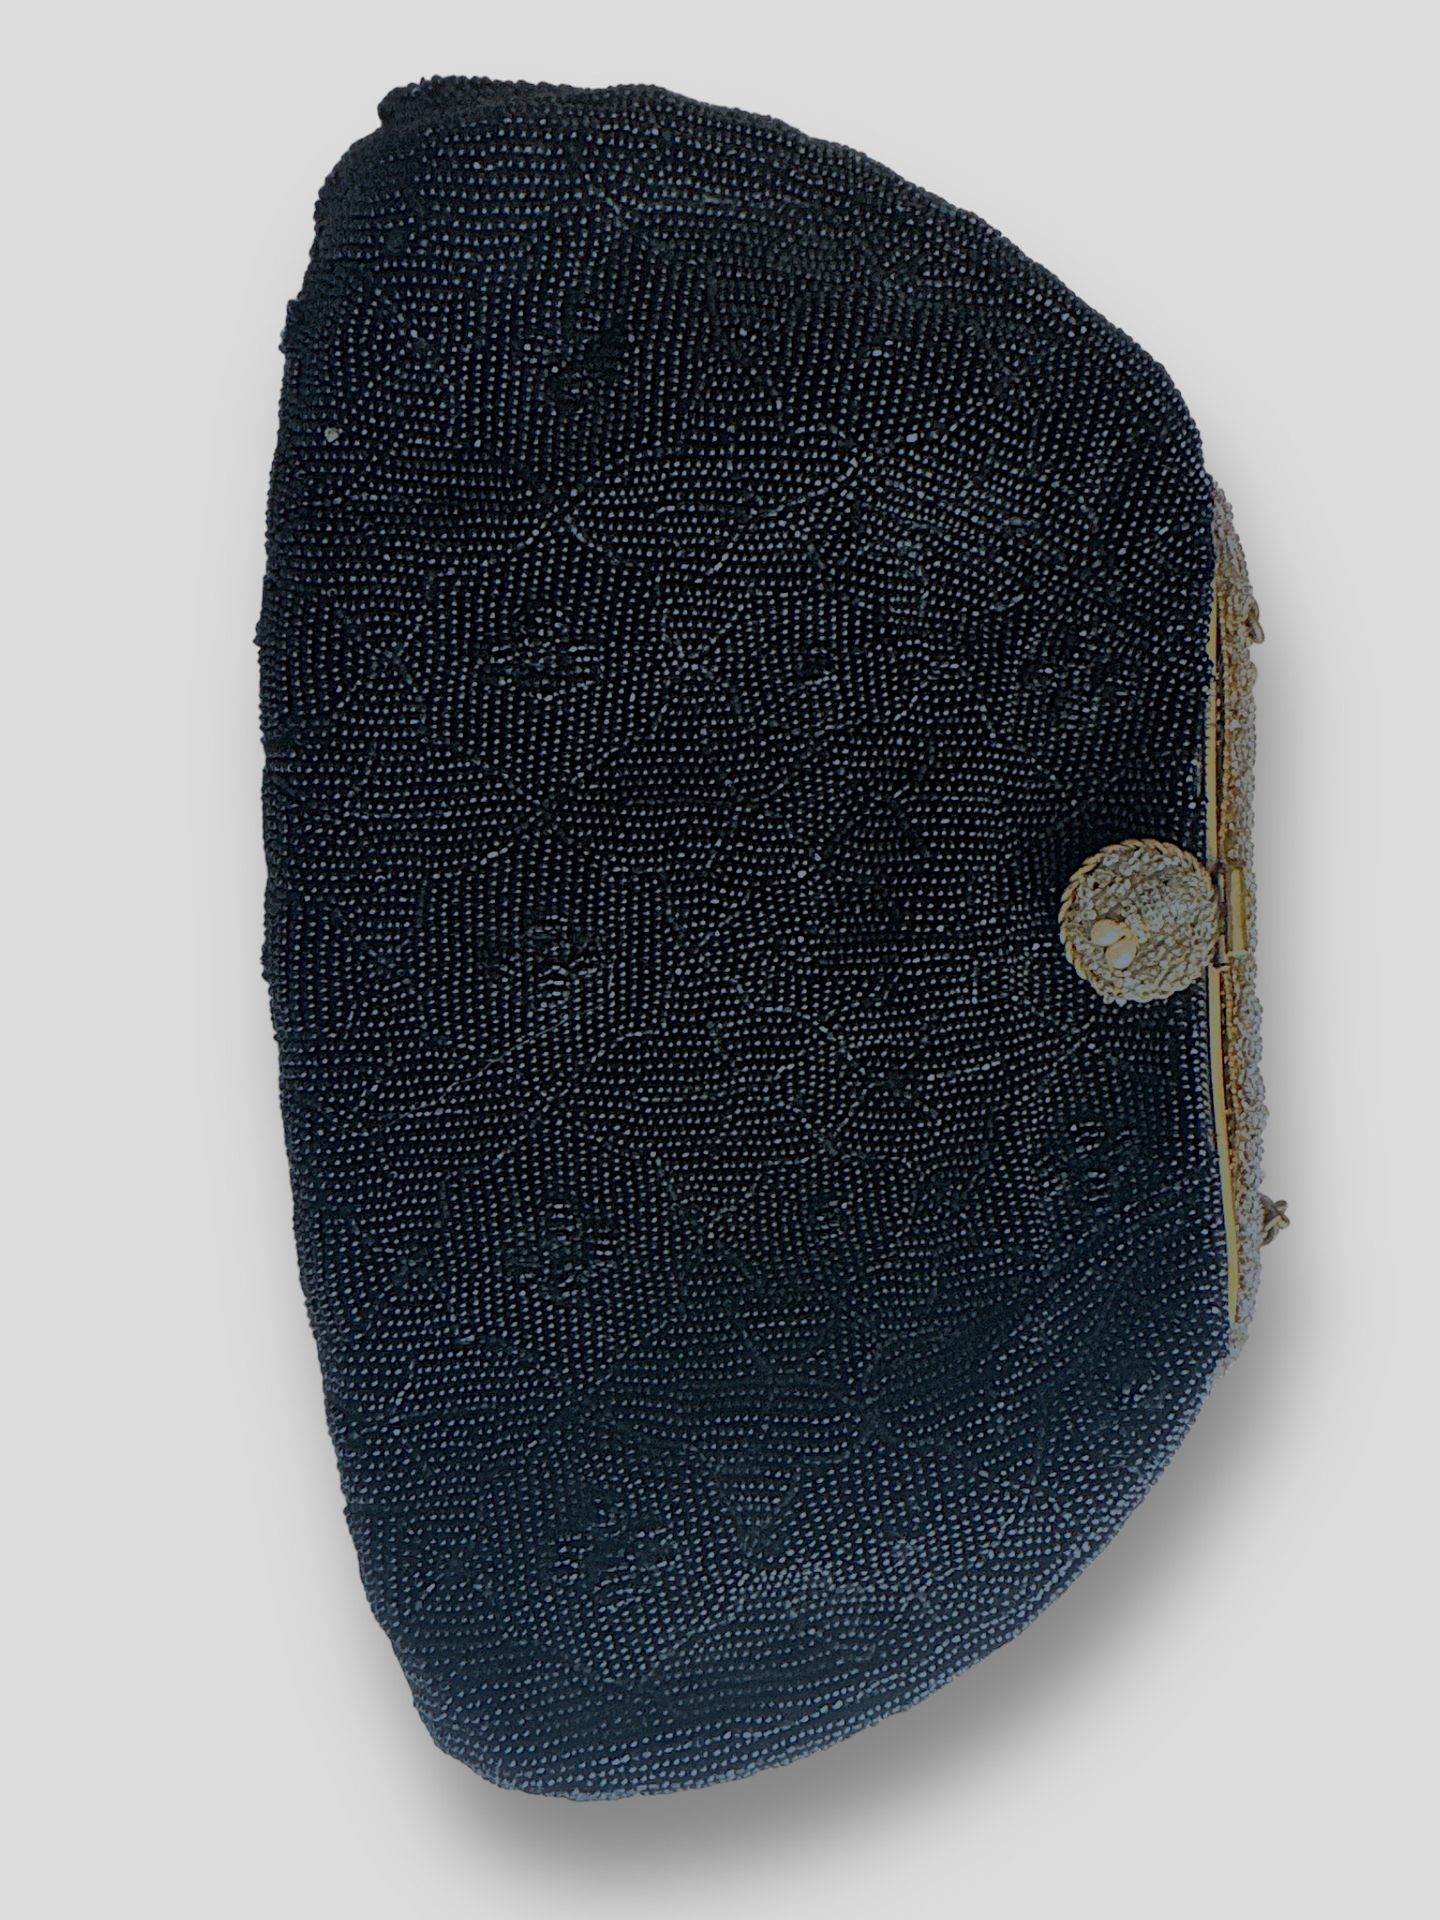 Null Minaudière mit schwarzen Rocaille-Perlen verziert